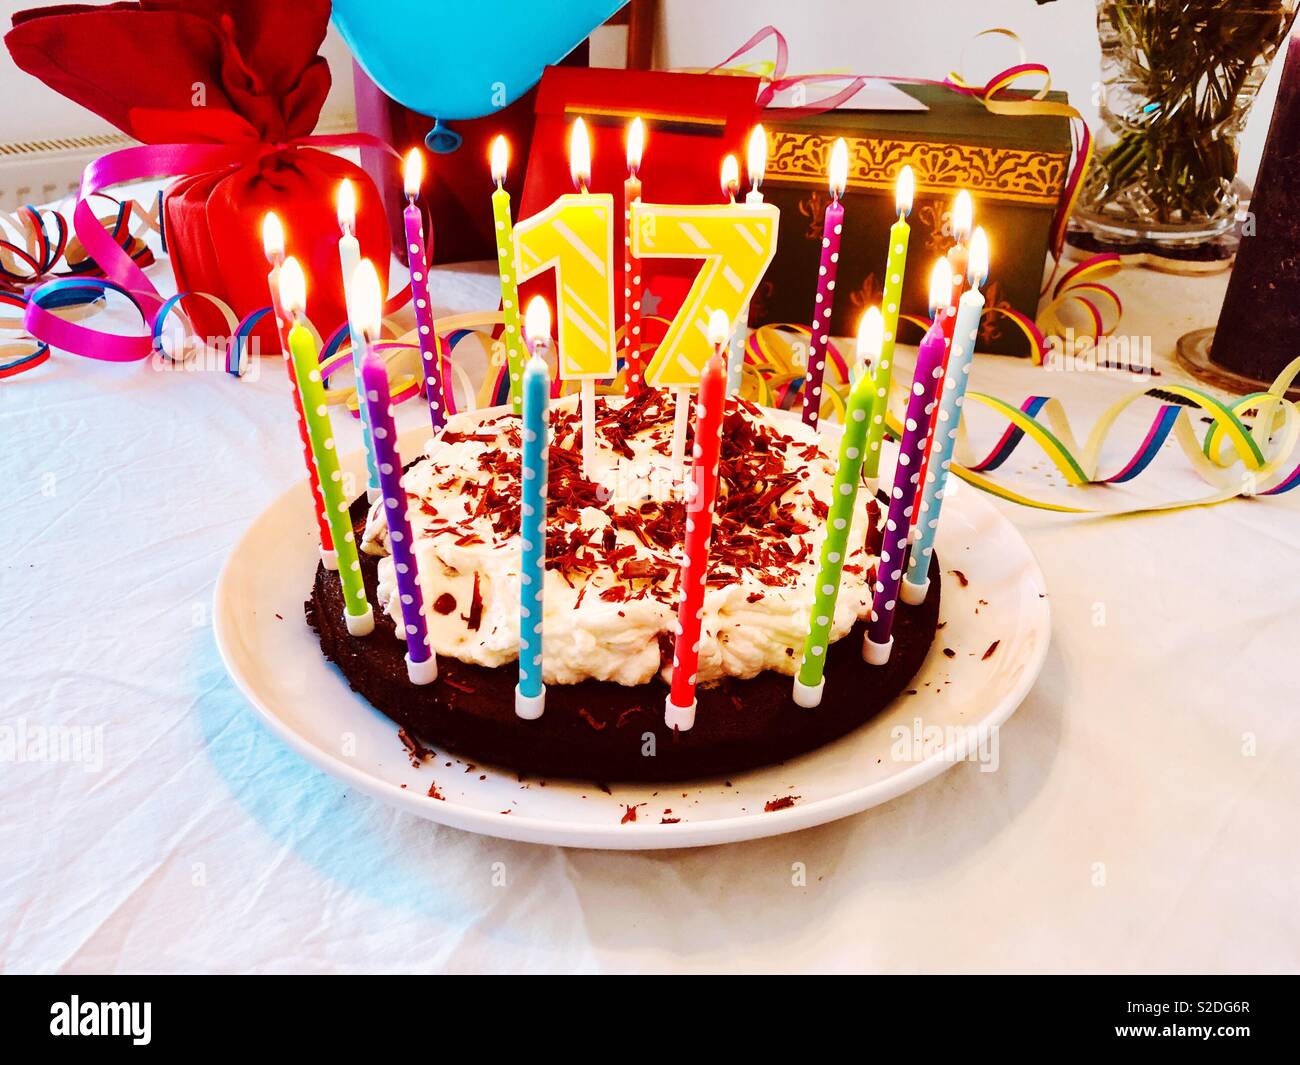 Geburtstag Kuchen Fur Einen 17 Geburtstag Mit Brennenden Kerzen Und Bunte Dekoration Auf Einem Geburtstagstisch Mit Geschenken Im Hintergrund Stockfotografie Alamy